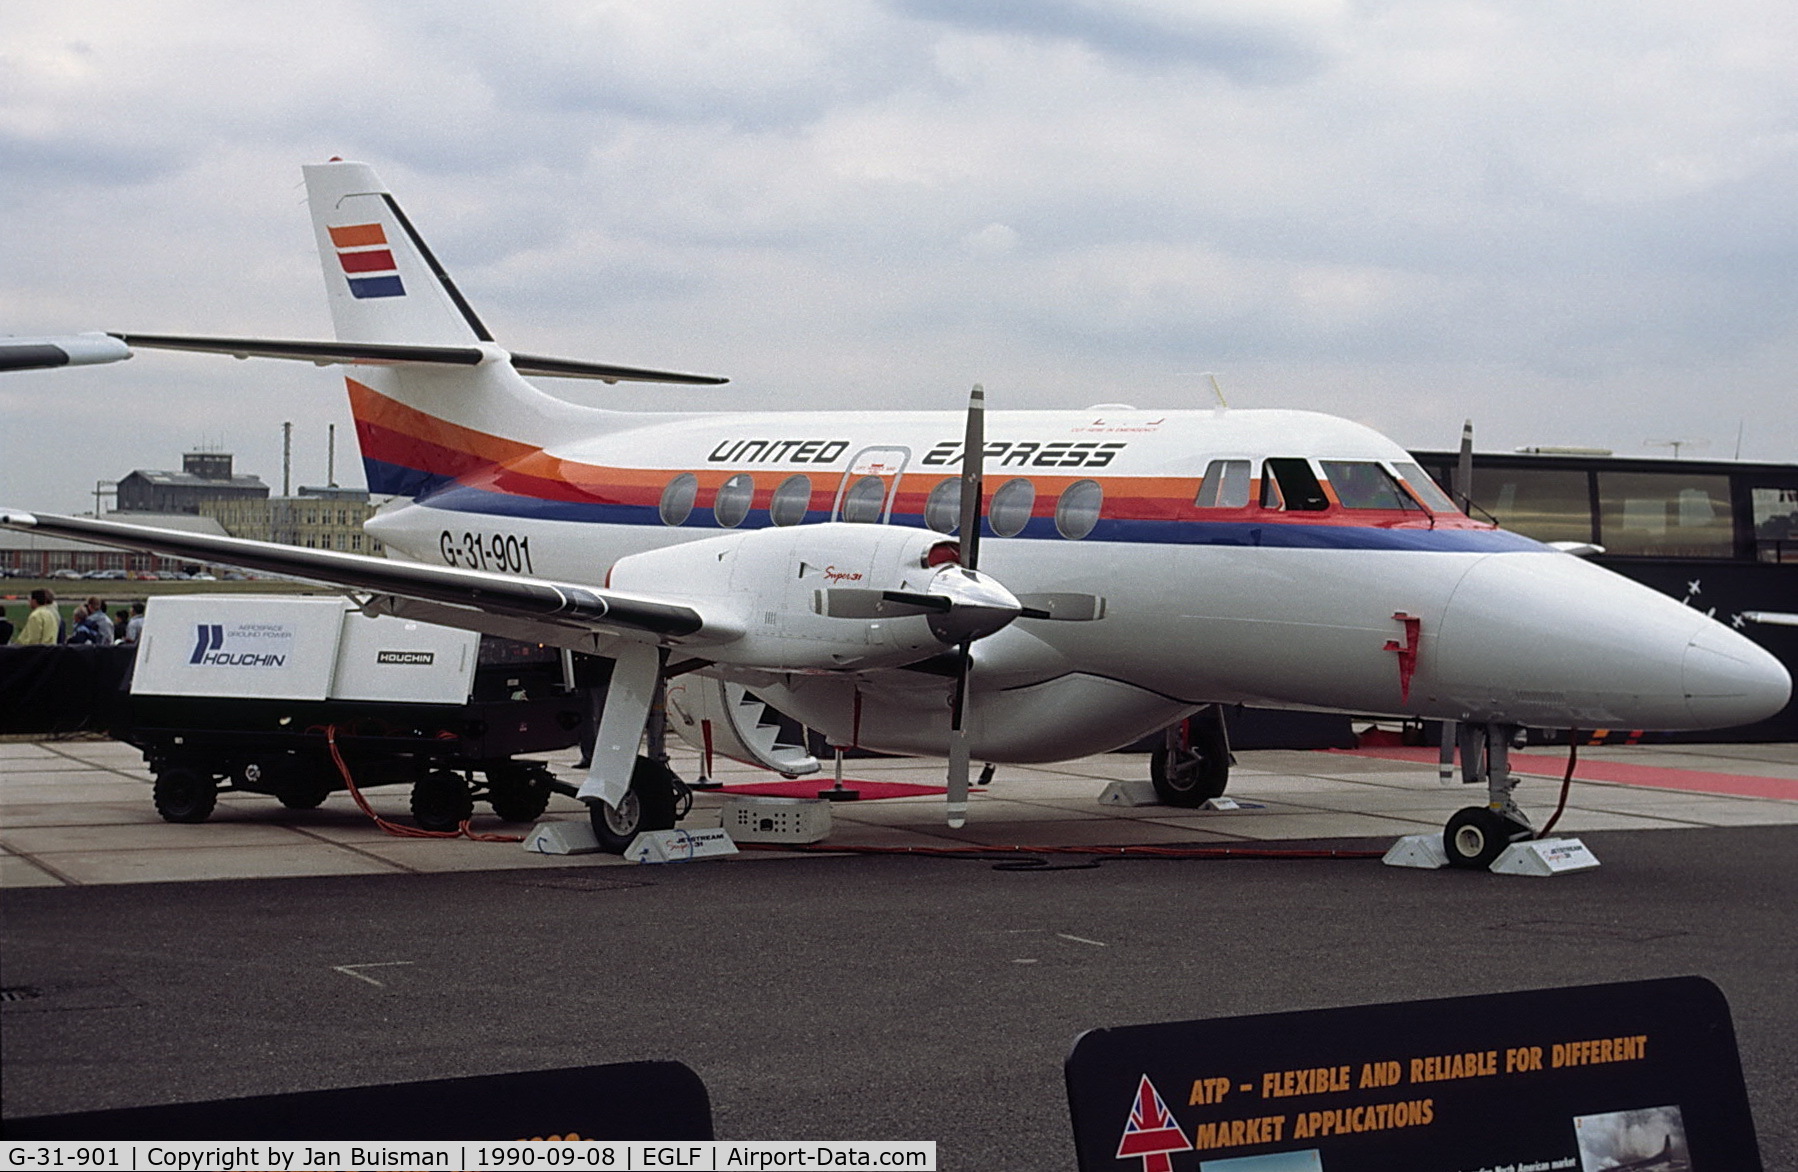 G-31-901, 1990 British Aerospace BAe-3201 Jetstream C/N 901, United Express